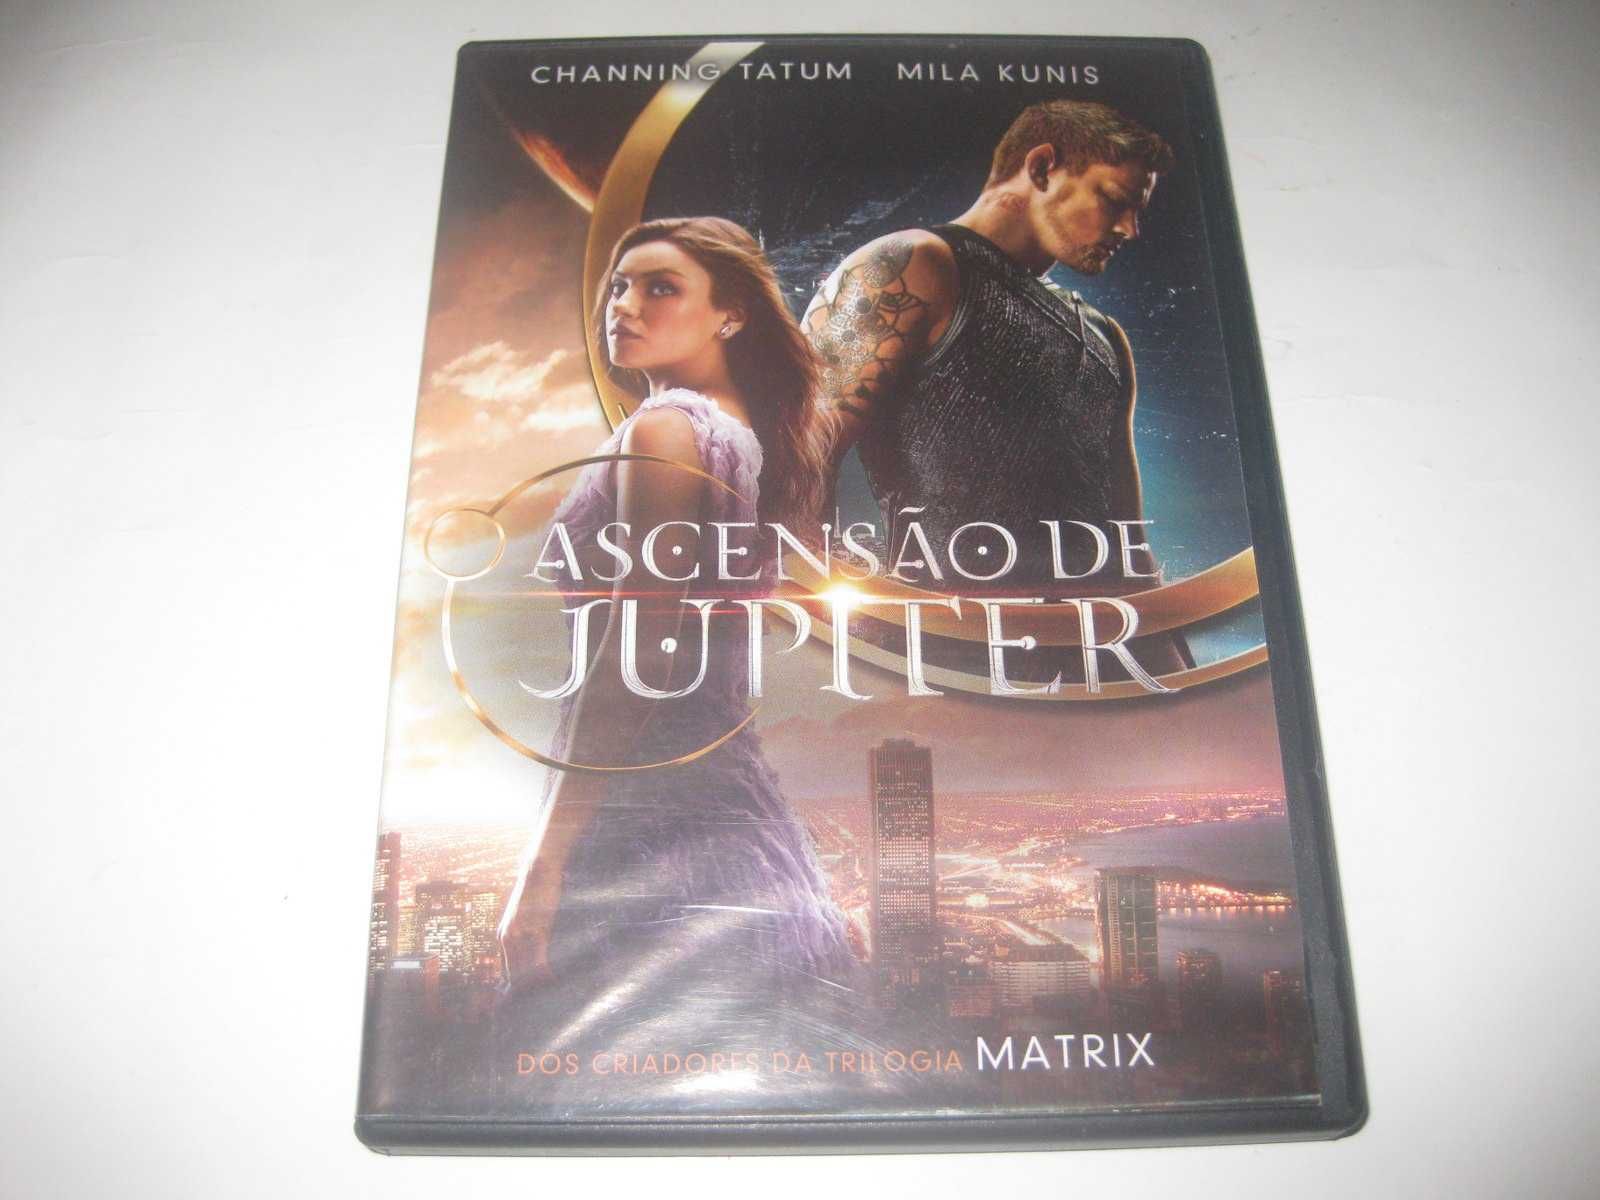 DVD "Ascensão de Júpiter" com Mila Kunis